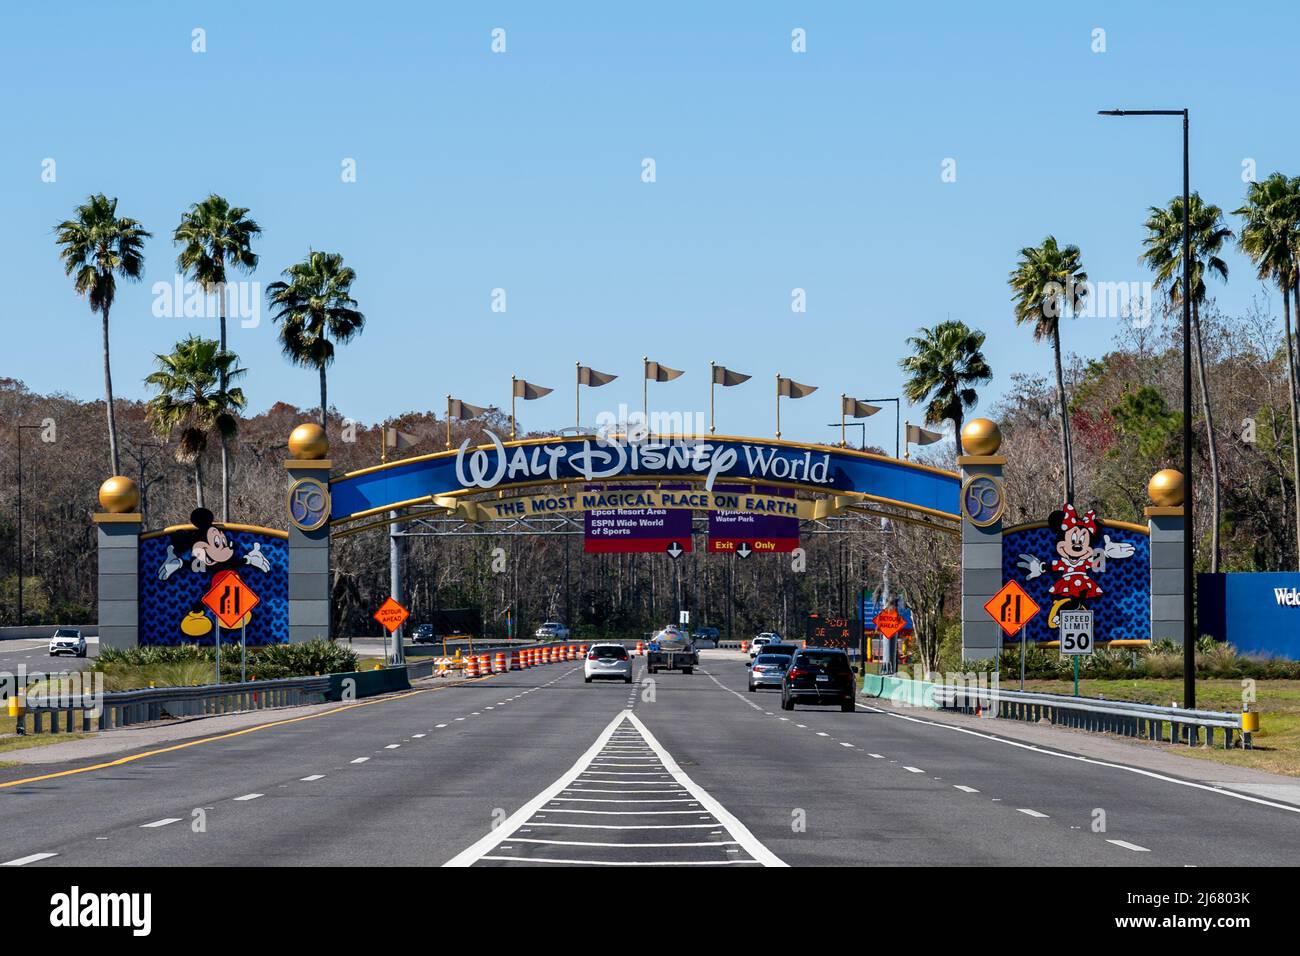 Orlando, Floride, États-Unis - 9 février 2022 : une porte d'entrée de Walt Disney World à Orlando, Floride, États-Unis. Walt Disney World est un reso de divertissement Banque D'Images